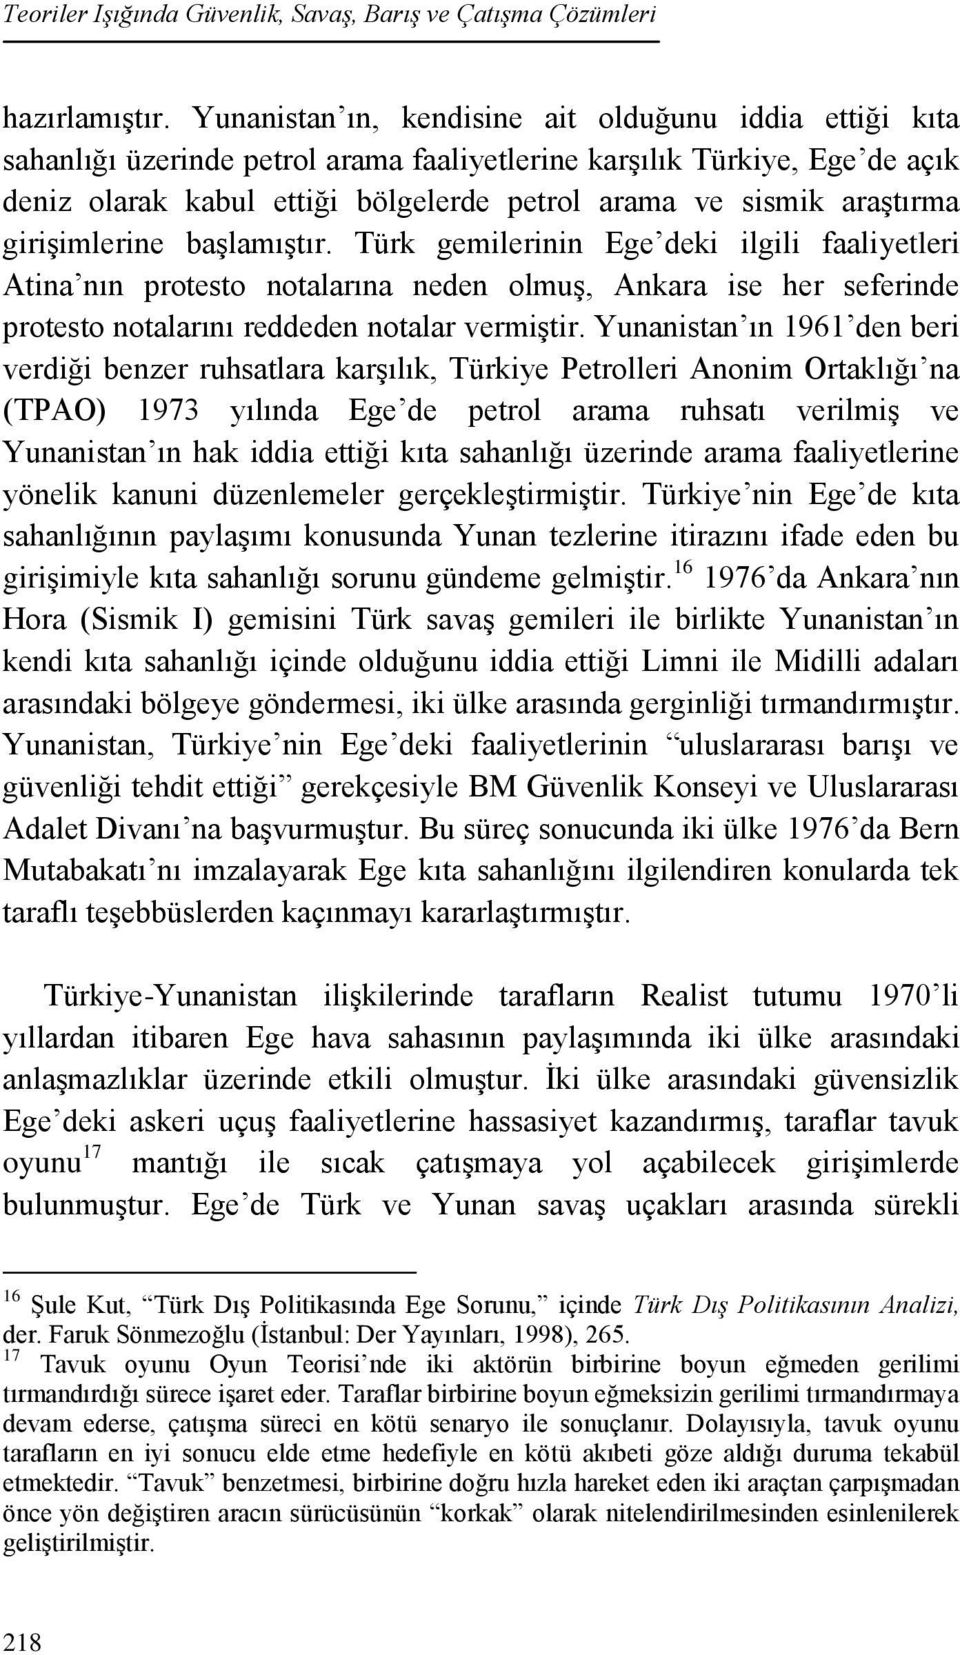 araştırma girişimlerine başlamıştır. Türk gemilerinin Ege deki ilgili faaliyetleri Atina nın protesto notalarına neden olmuş, Ankara ise her seferinde protesto notalarını reddeden notalar vermiştir.